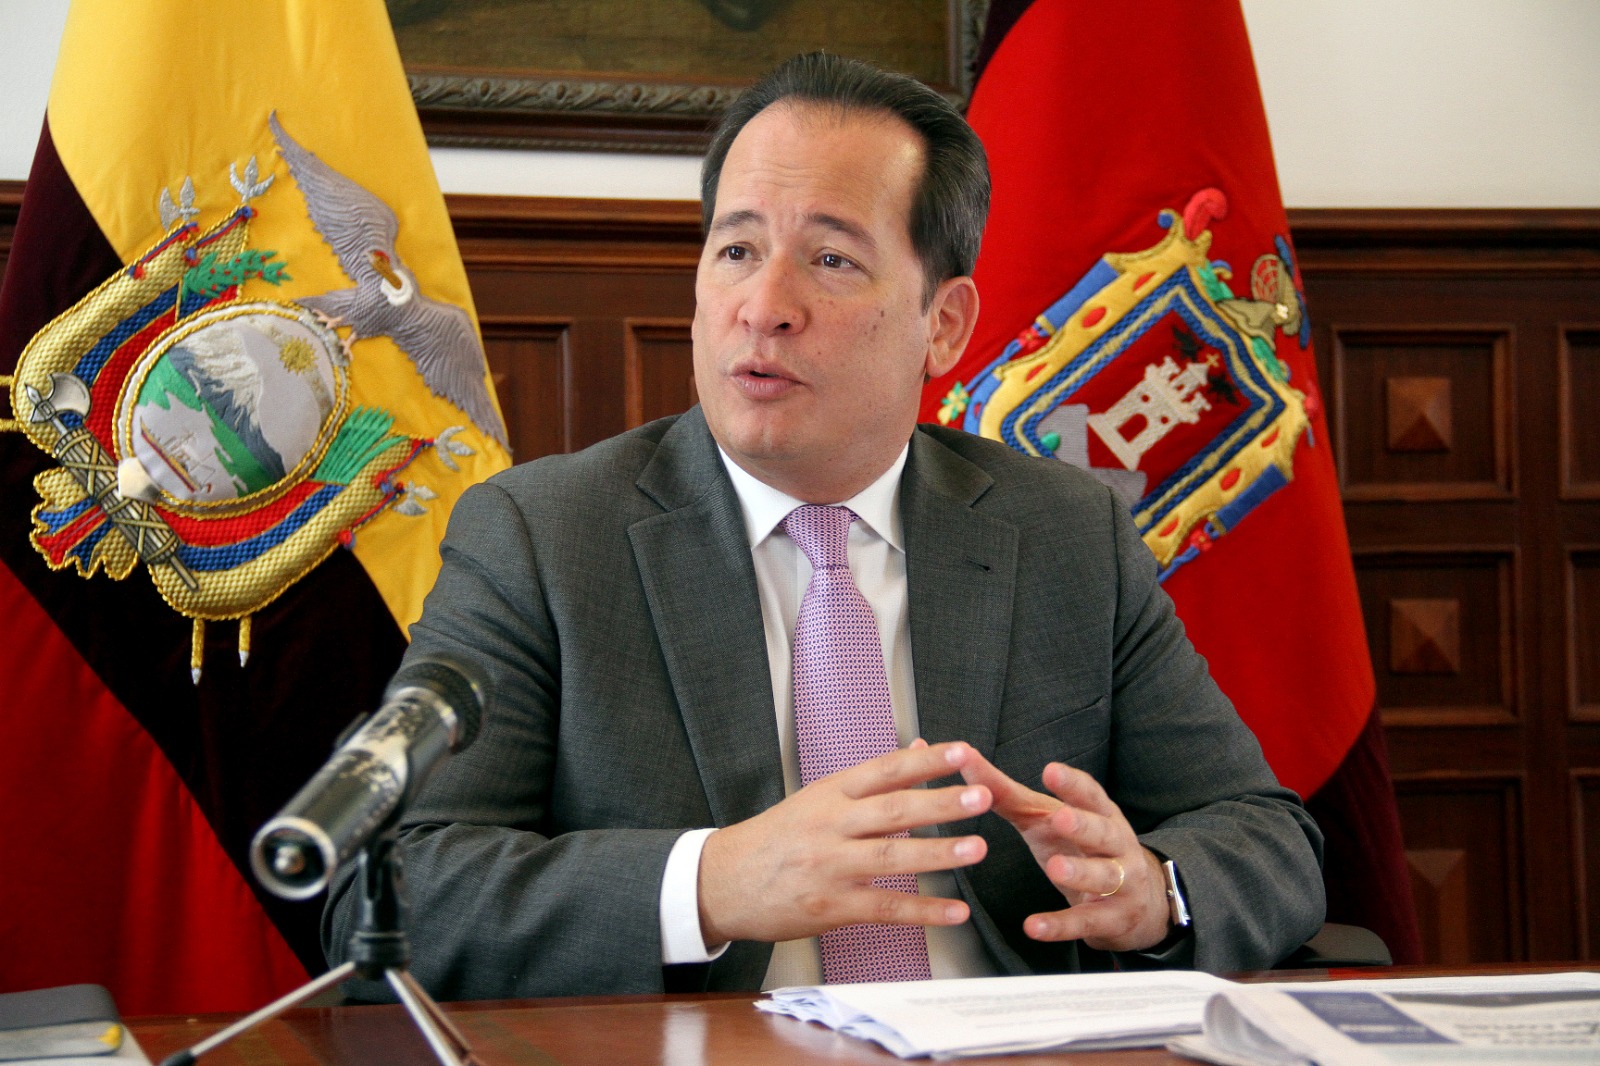 MADUREZ. El Ministro de Gobierno advierte que es importante dar tiempo y apoyo al nuevo gobierno. Foto: Ministerio de Gobierno